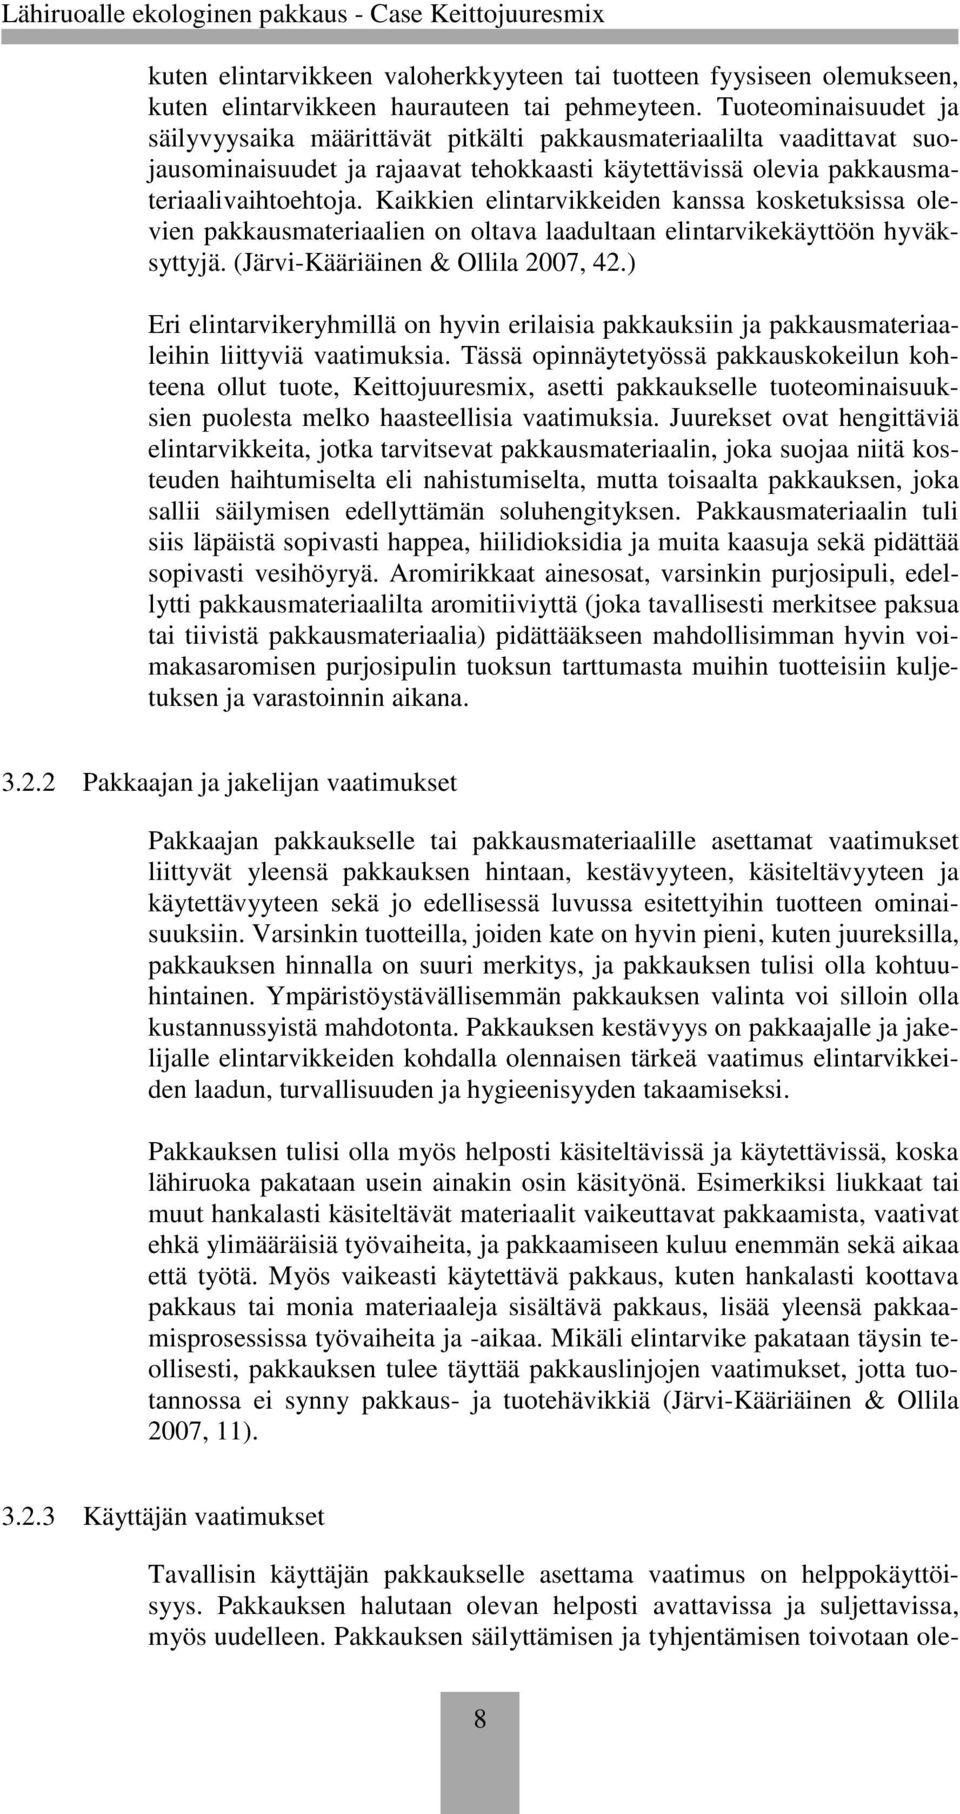 Kaikkien elintarvikkeiden kanssa kosketuksissa olevien pakkausmateriaalien on oltava laadultaan elintarvikekäyttöön hyväksyttyjä. (Järvi-Kääriäinen & Ollila 2007, 42.